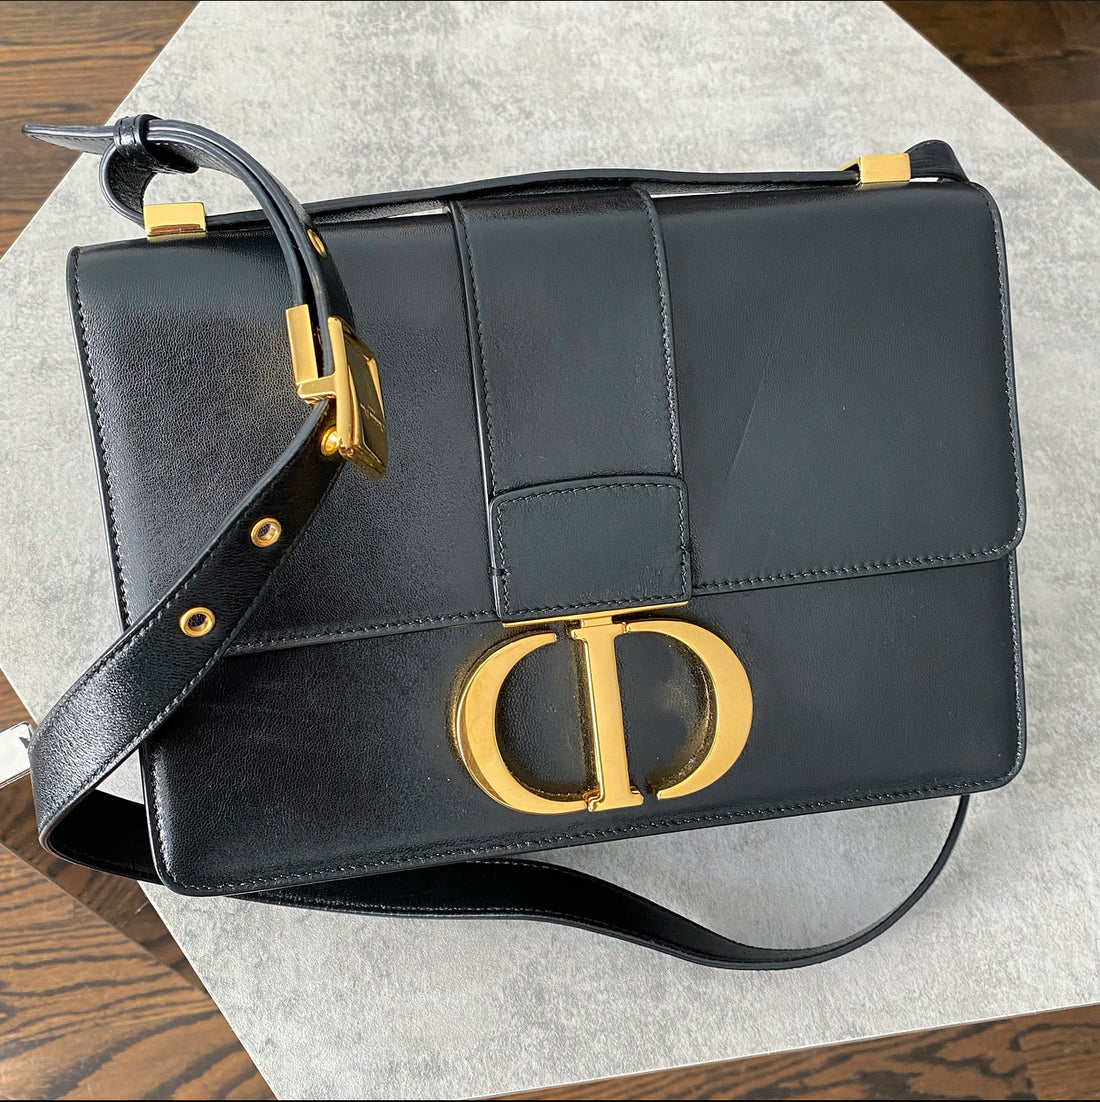 Dior Black Leather Medium 30 Montagne Bag – I MISS YOU VINTAGE